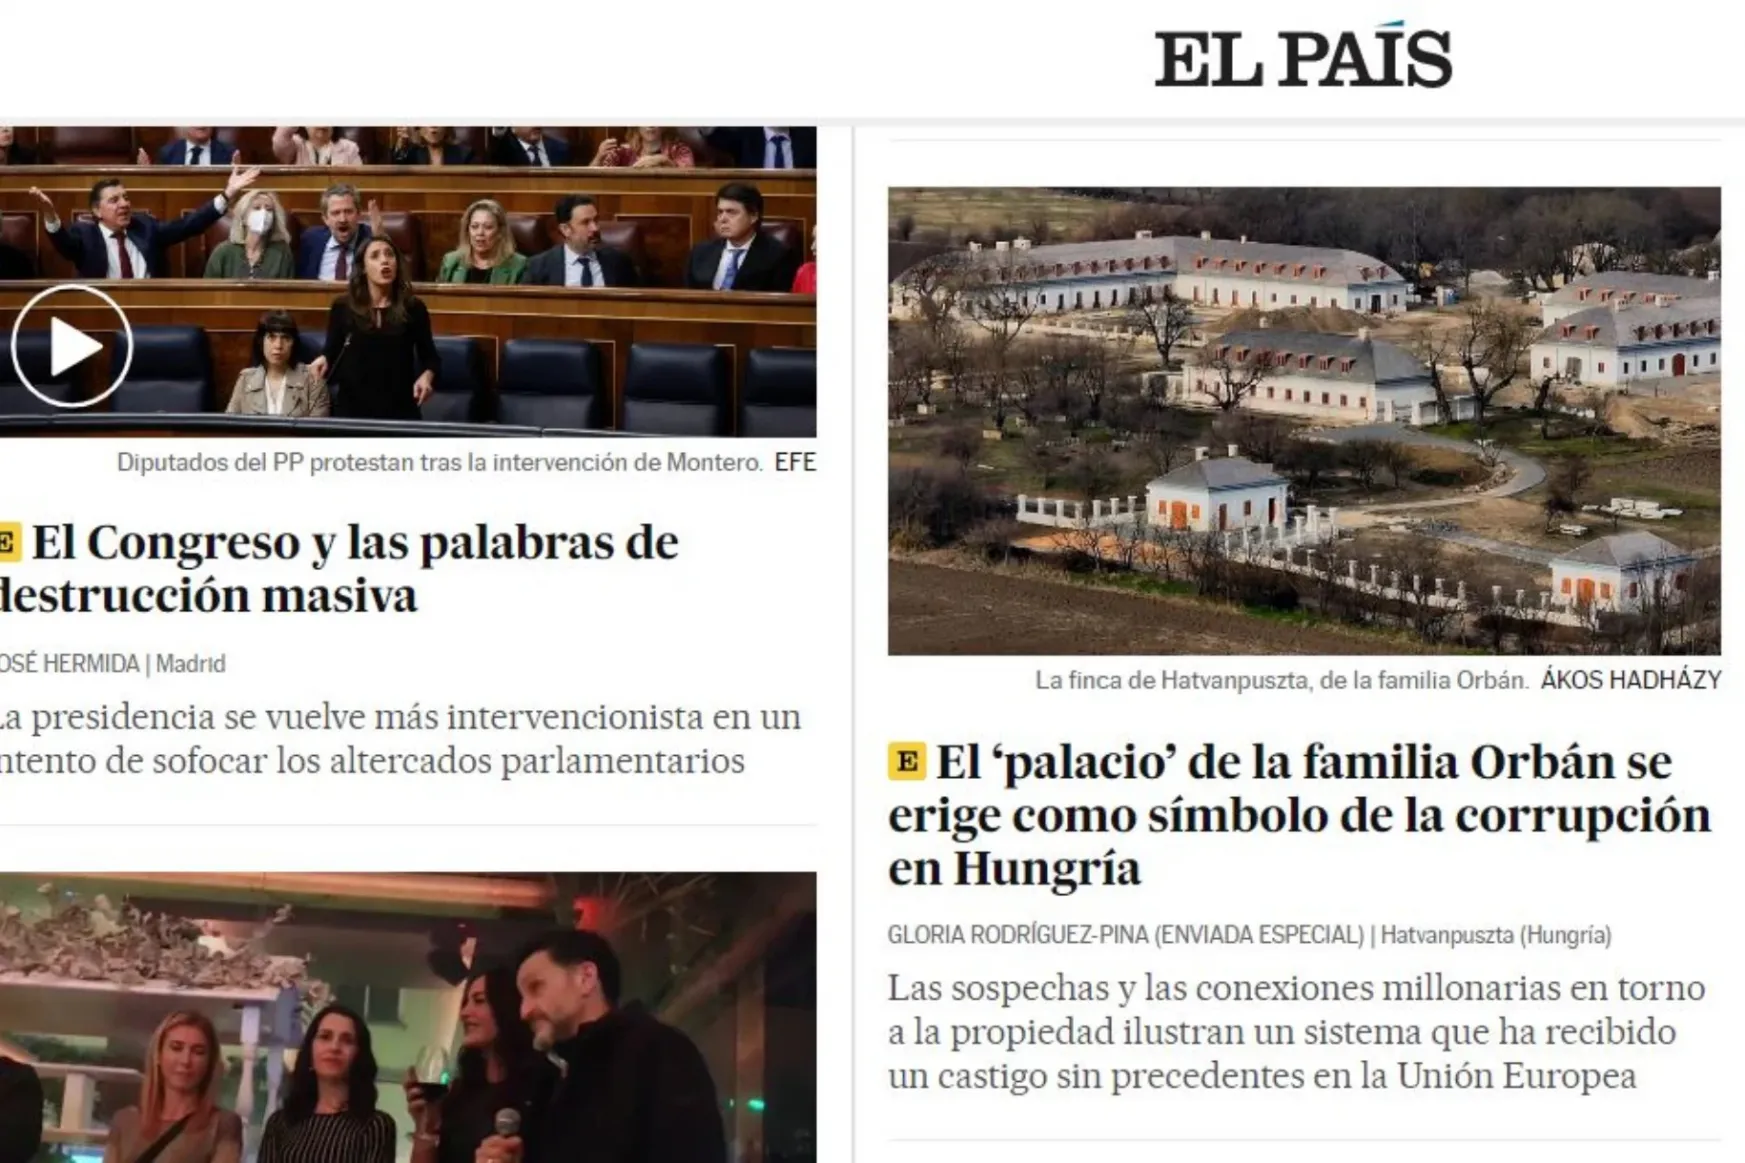 Orbánék hatvanpusztai „palotájáról” cikkezik az El País